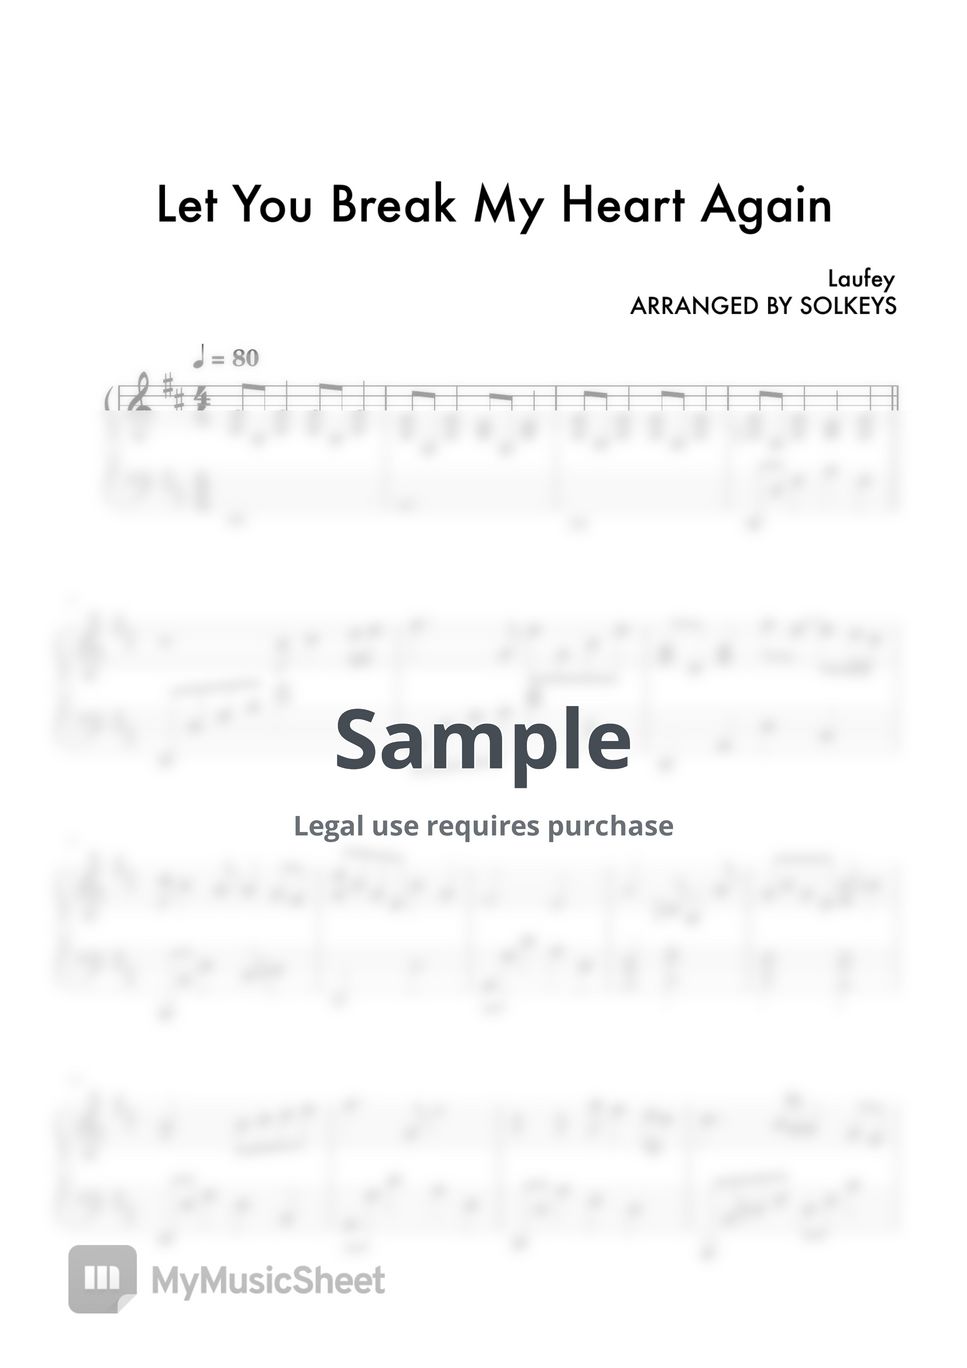 Laufey - Let You Break My Heart Again by Solkeys